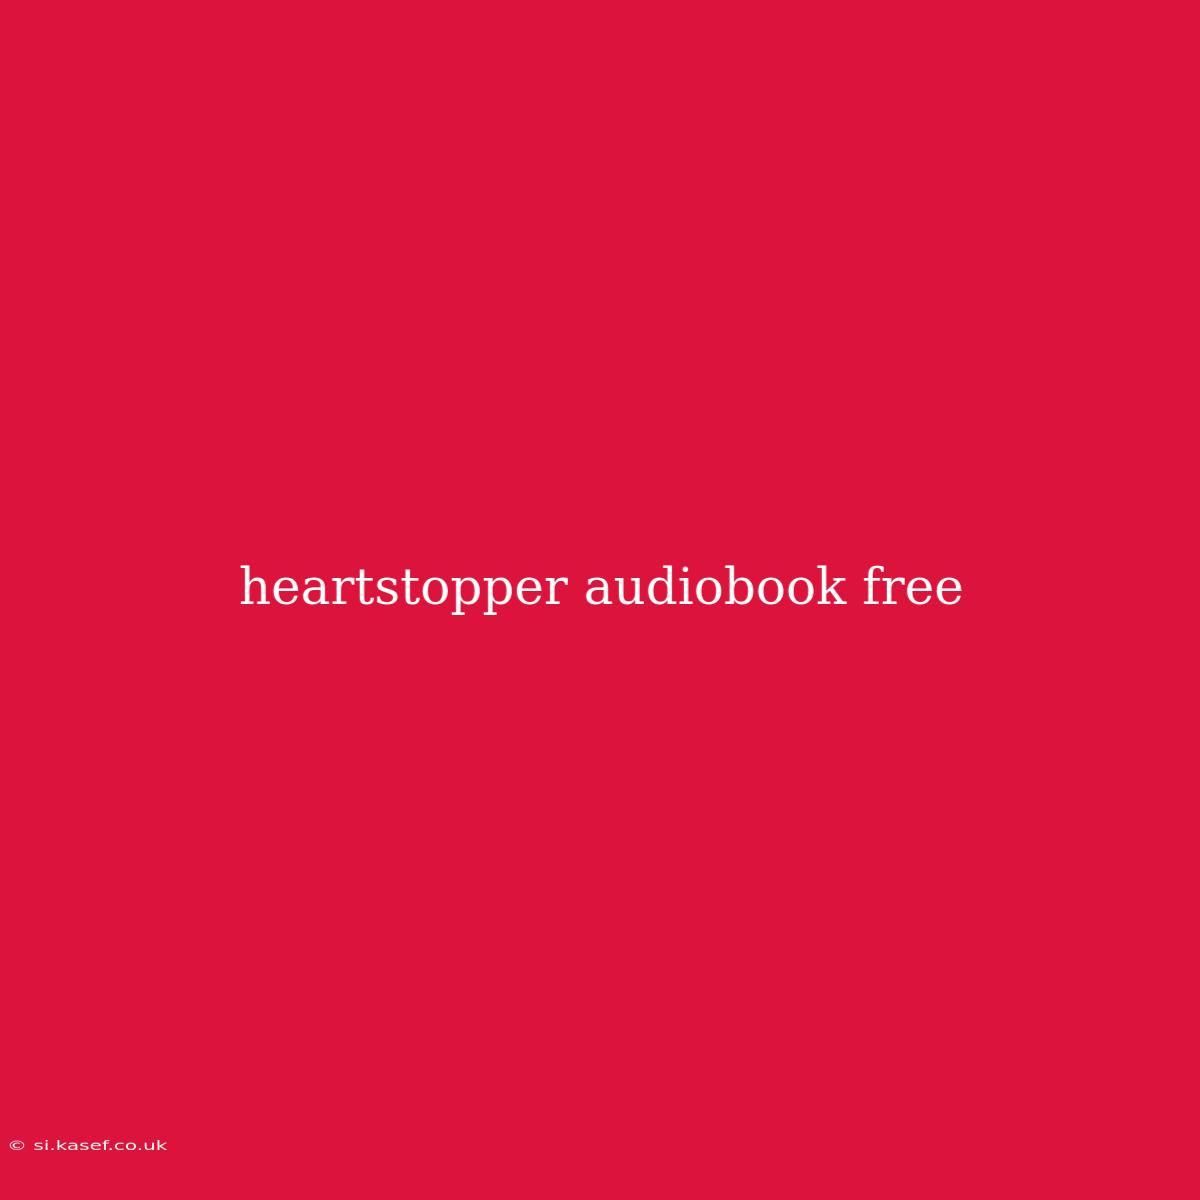 Heartstopper Audiobook Free